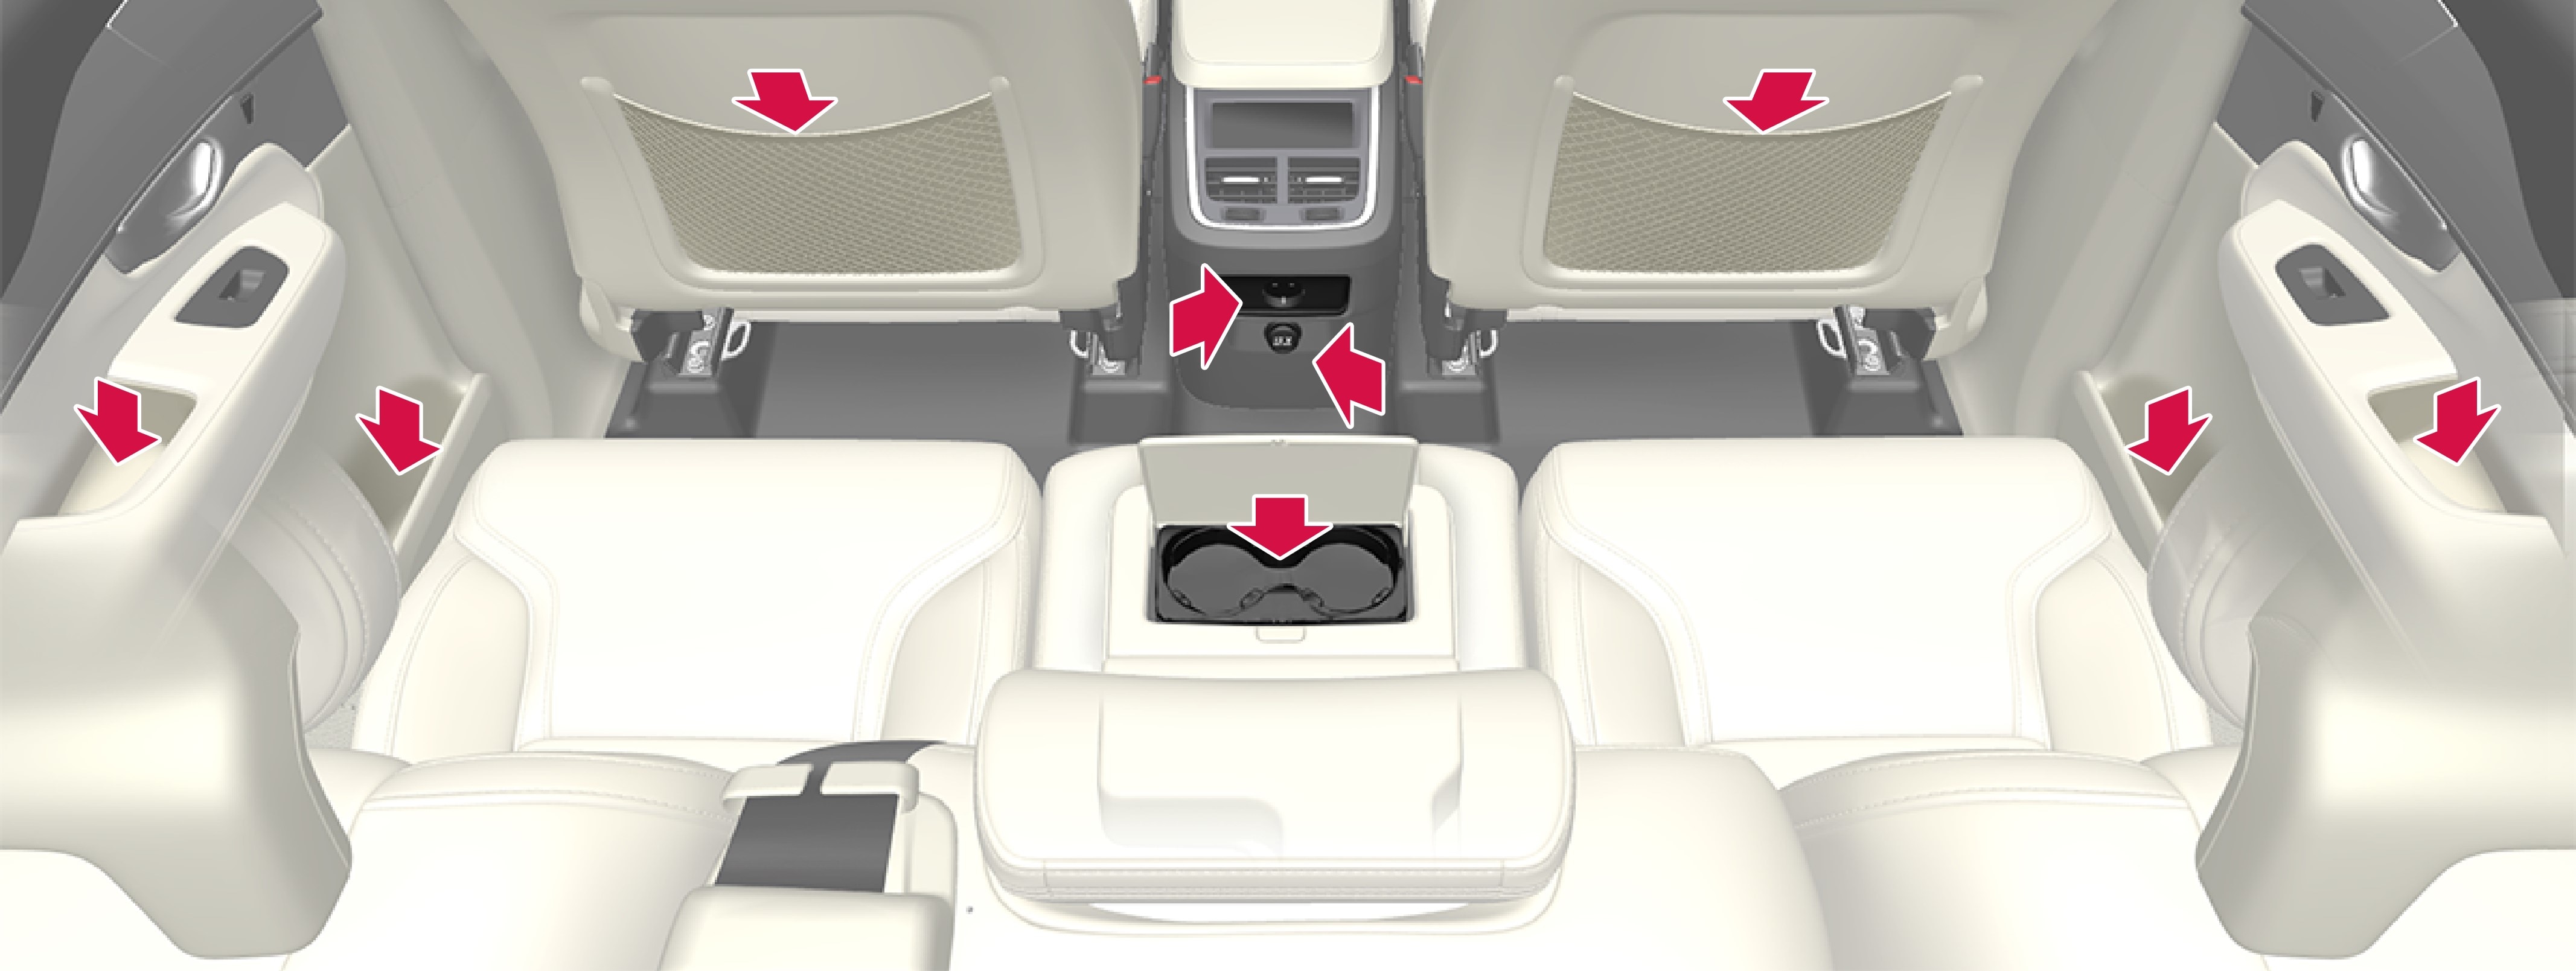 Відділення для зберігання та попільничка на боковій панелі дверцят, підстаканники у спинці центрального сидіння, кишені на спинці переднього сидіння, а також електророзетки і прикурювач в тунельній консолі.